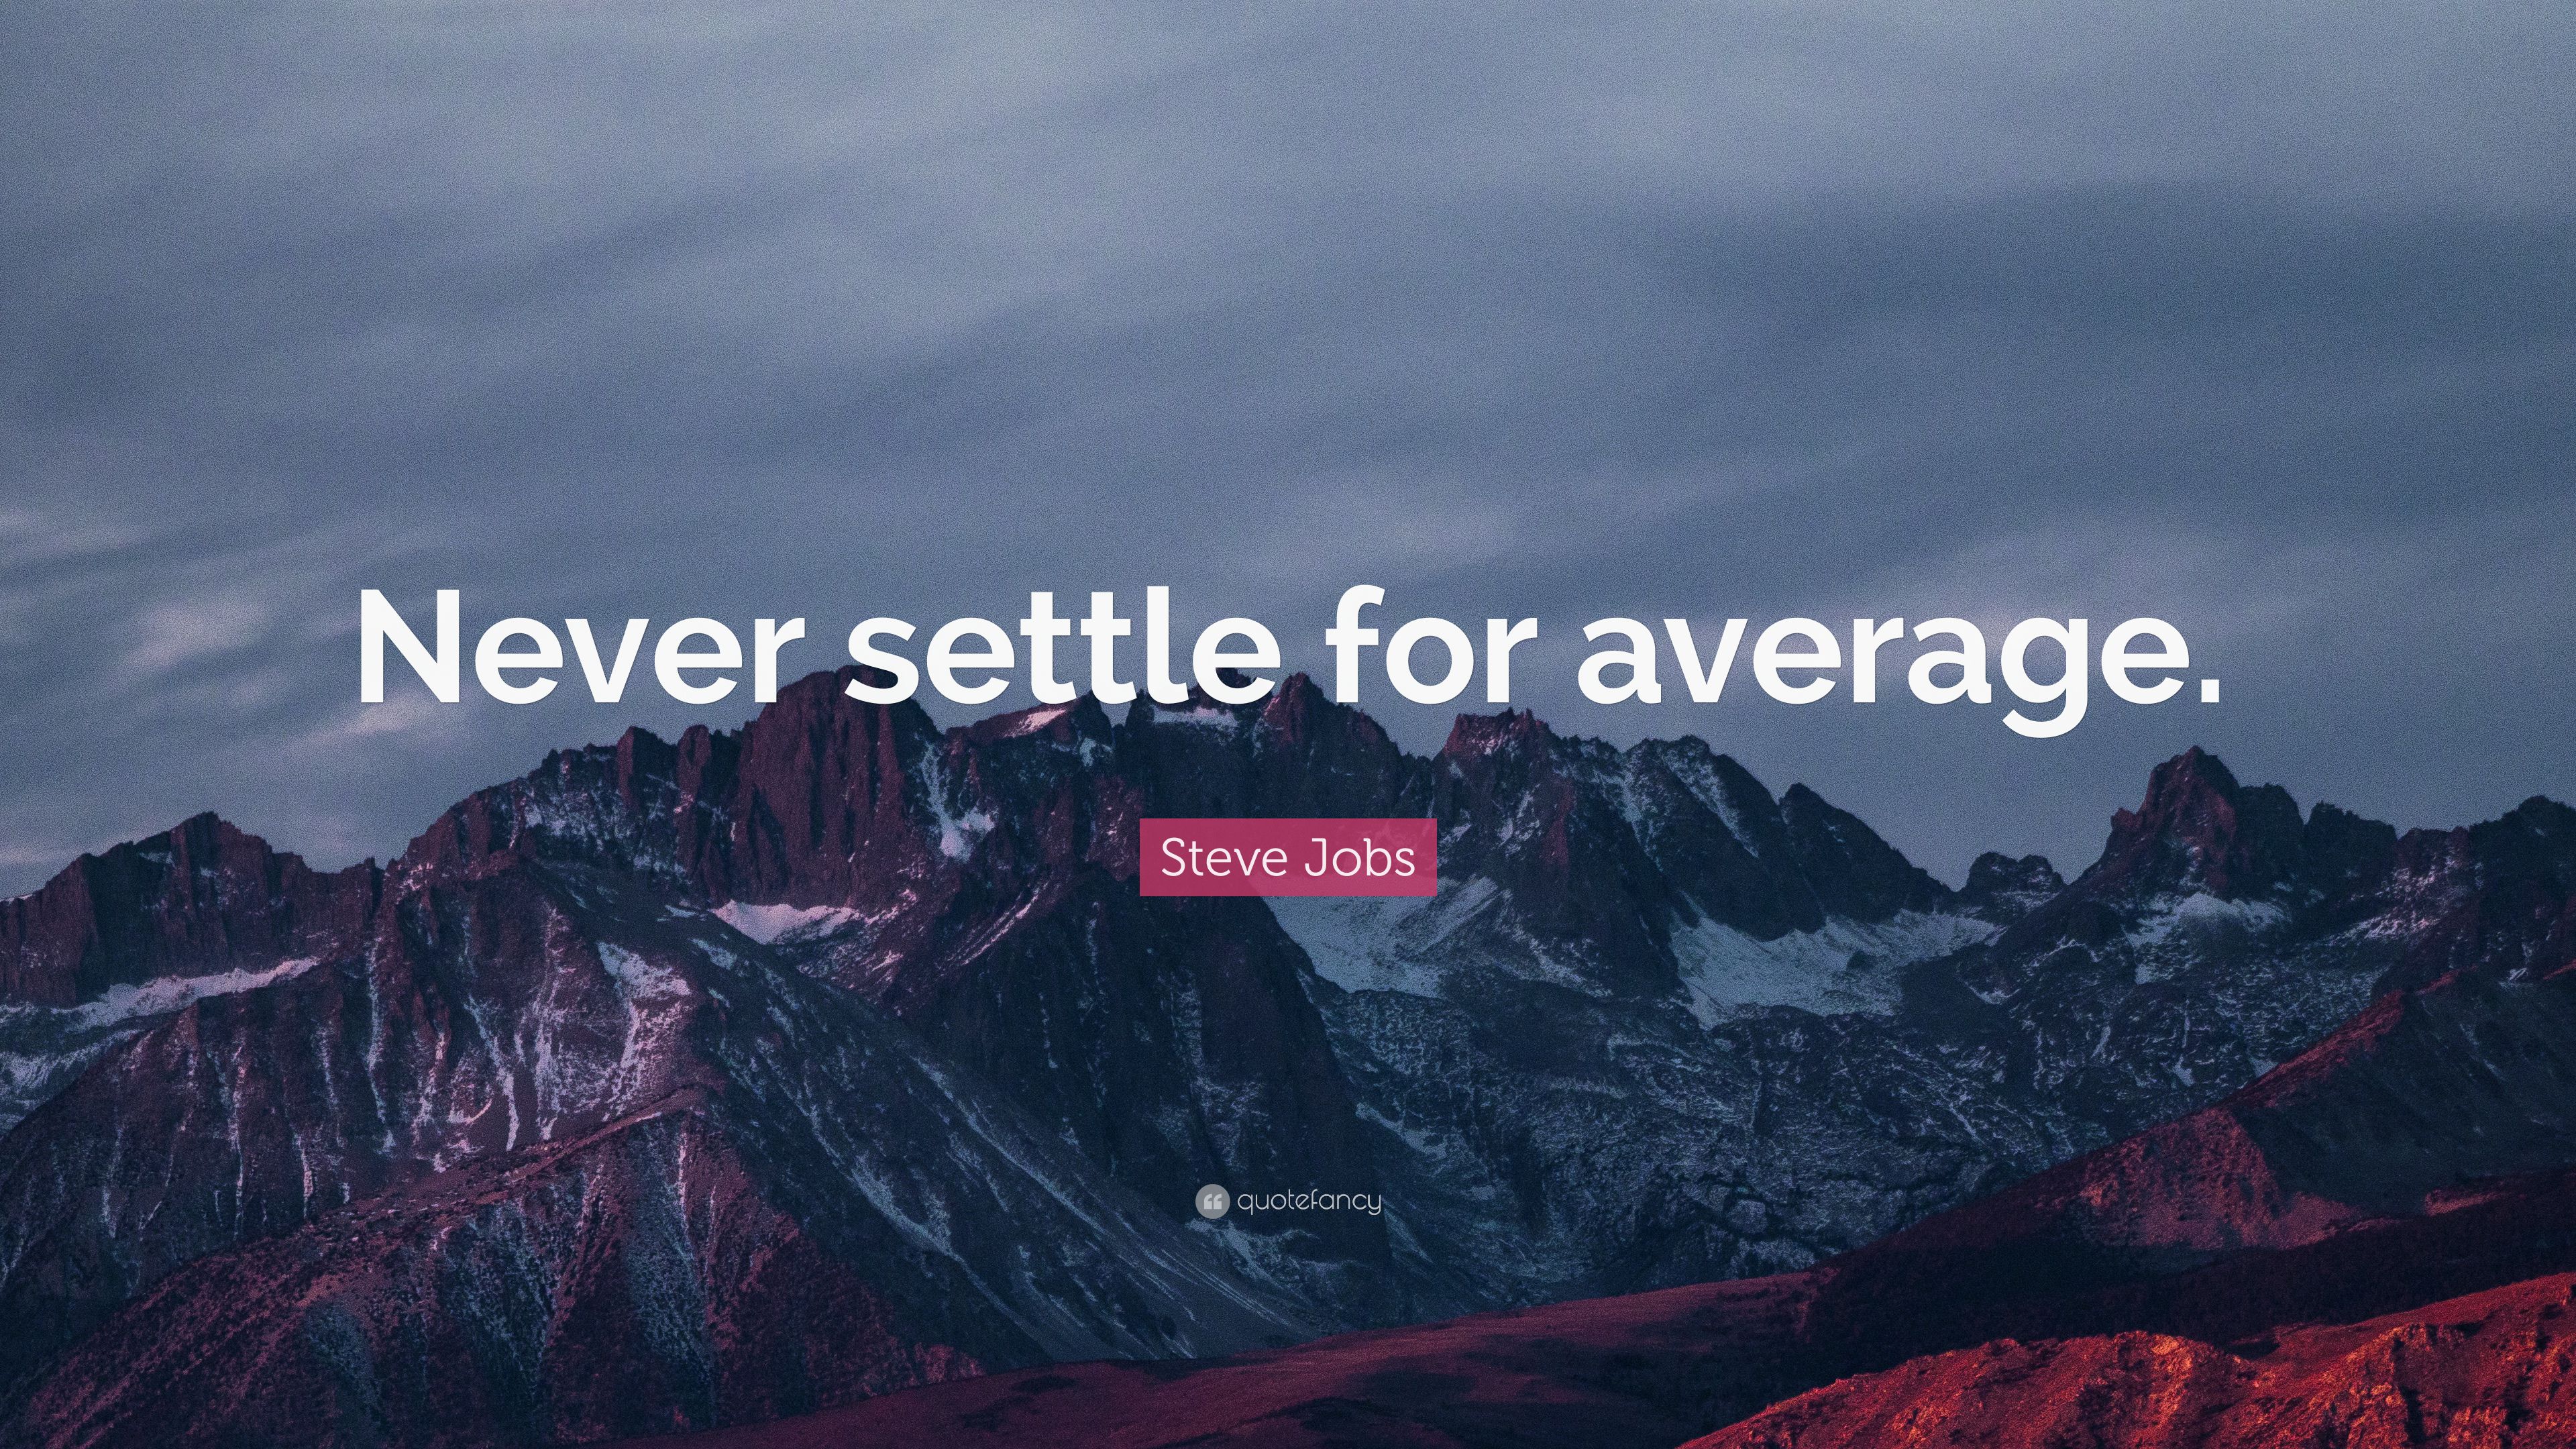 Steve Jobs Quote: “Never settle for average.” 12 wallpaper